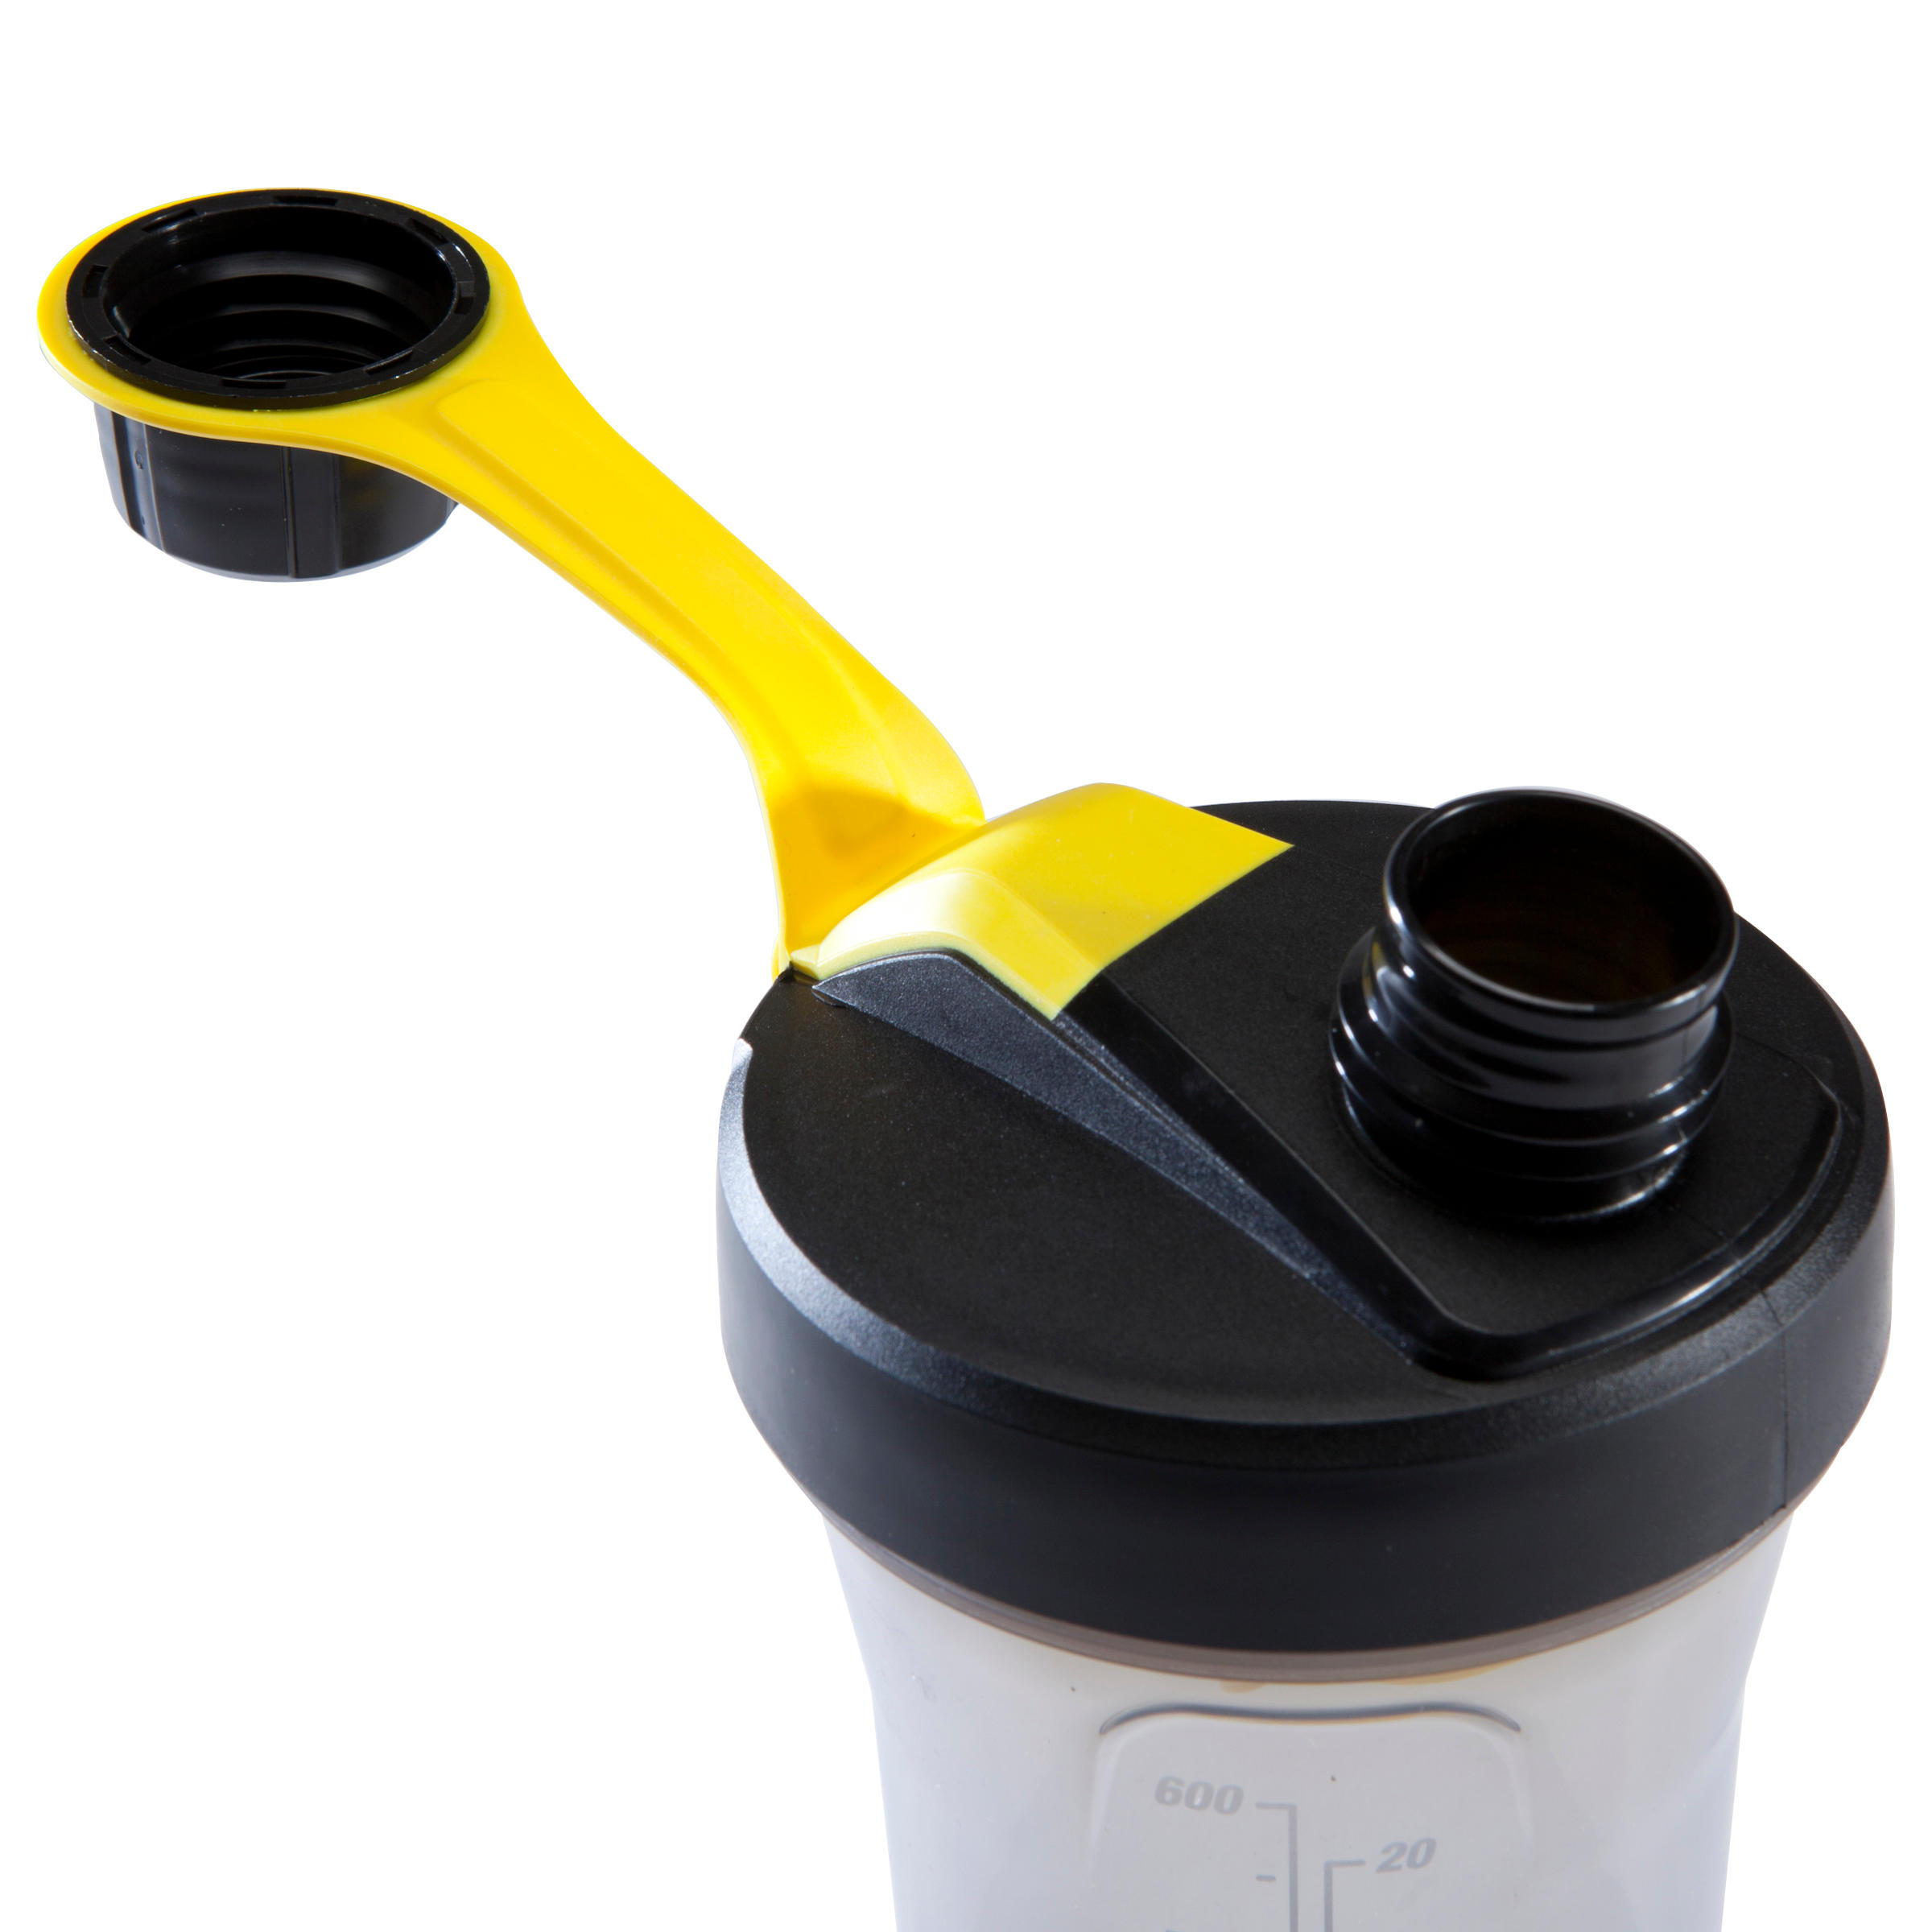 Shaker 700 ml - Black/Yellow 5/14